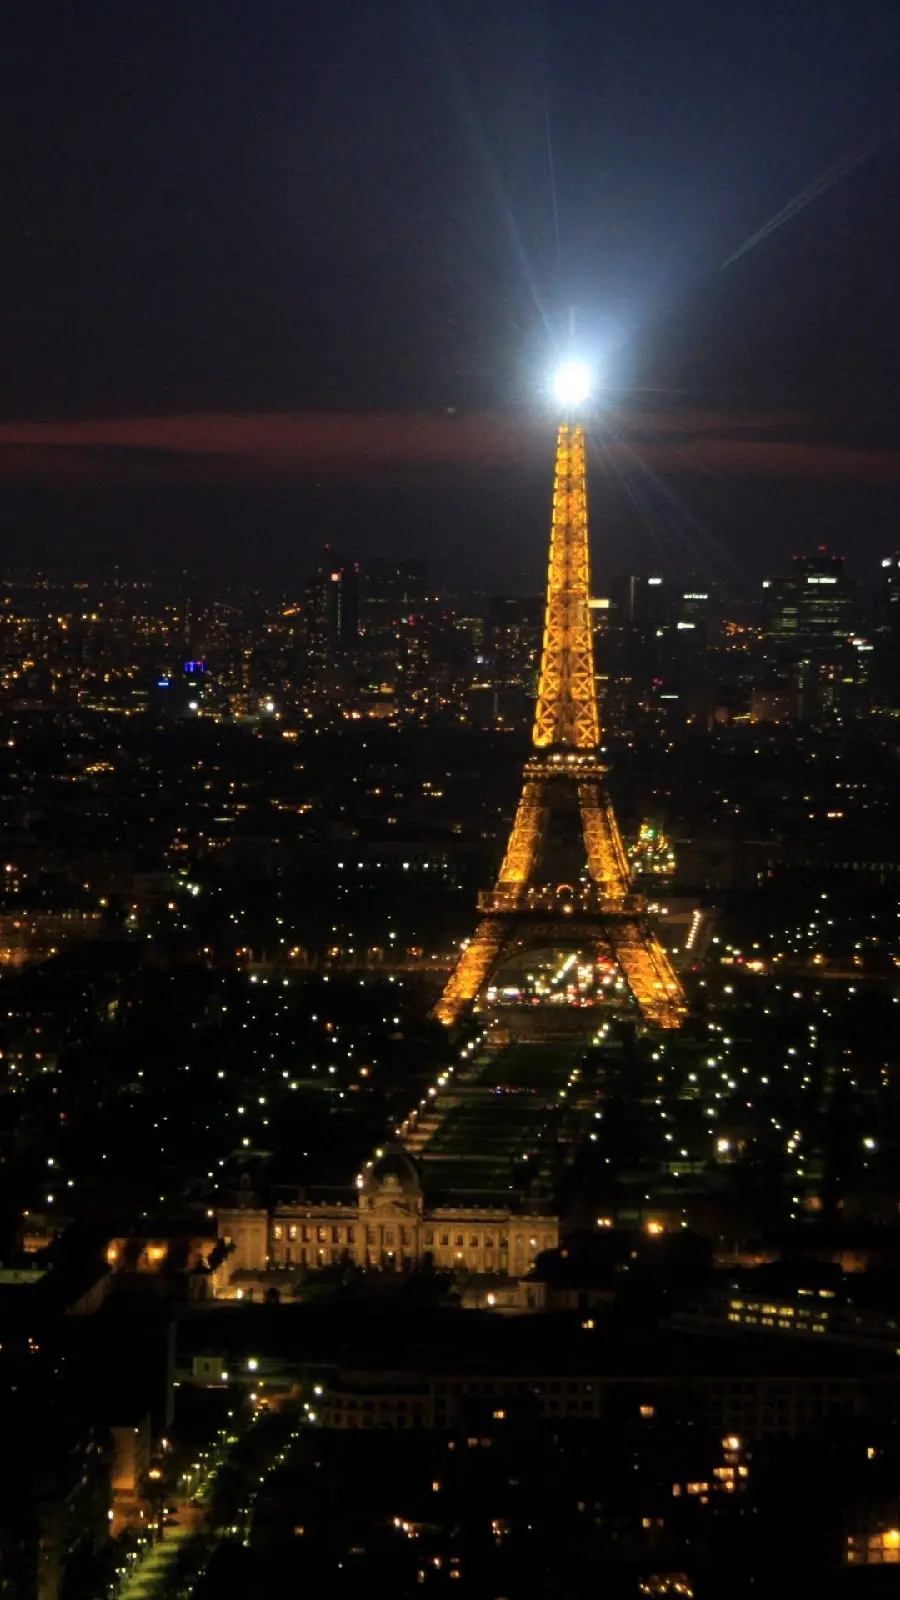 بک گراند خوشگل شهر پاریس فرانسه در شب برای گوشی موبایل